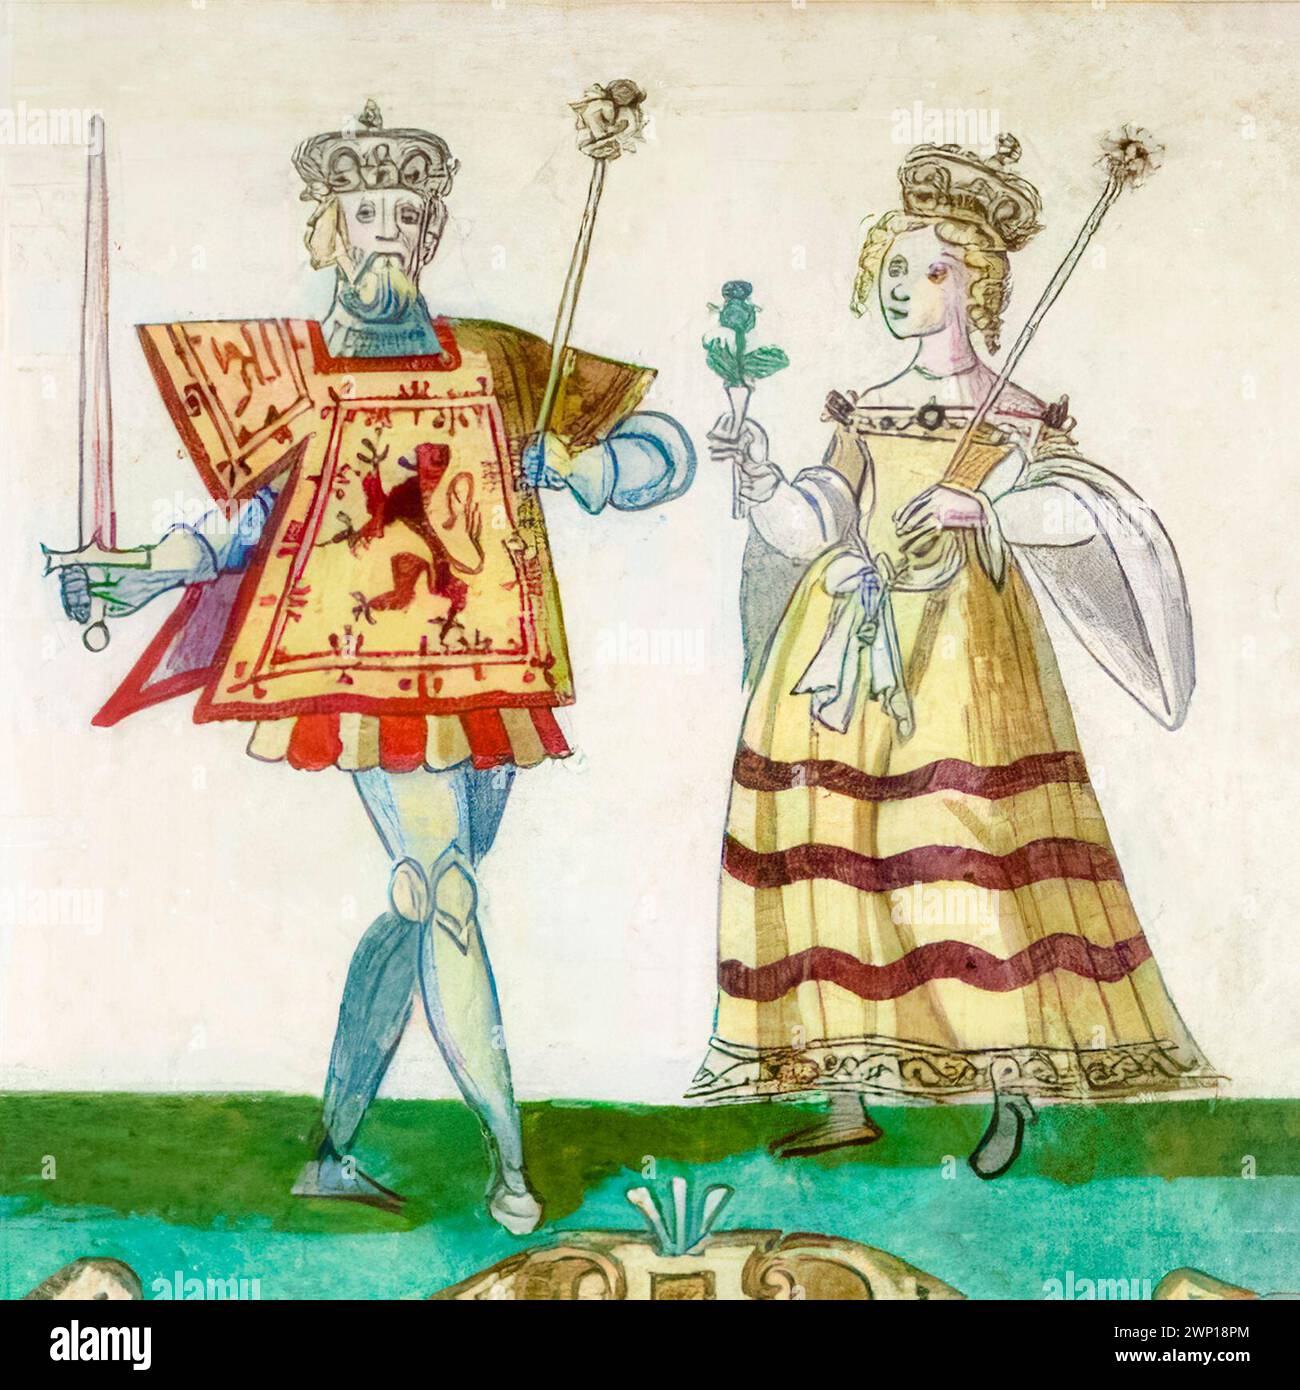 Robert III d'Écosse (vers 1337-1406) né John Stewart, roi d'Écosse 1390-1406 avec son épouse Anabella Drummond (vers 1350-1401), reine épouse d'Écosse 1390-1401, peinture manuscrite enluminée de portrait, vers 1562 Banque D'Images